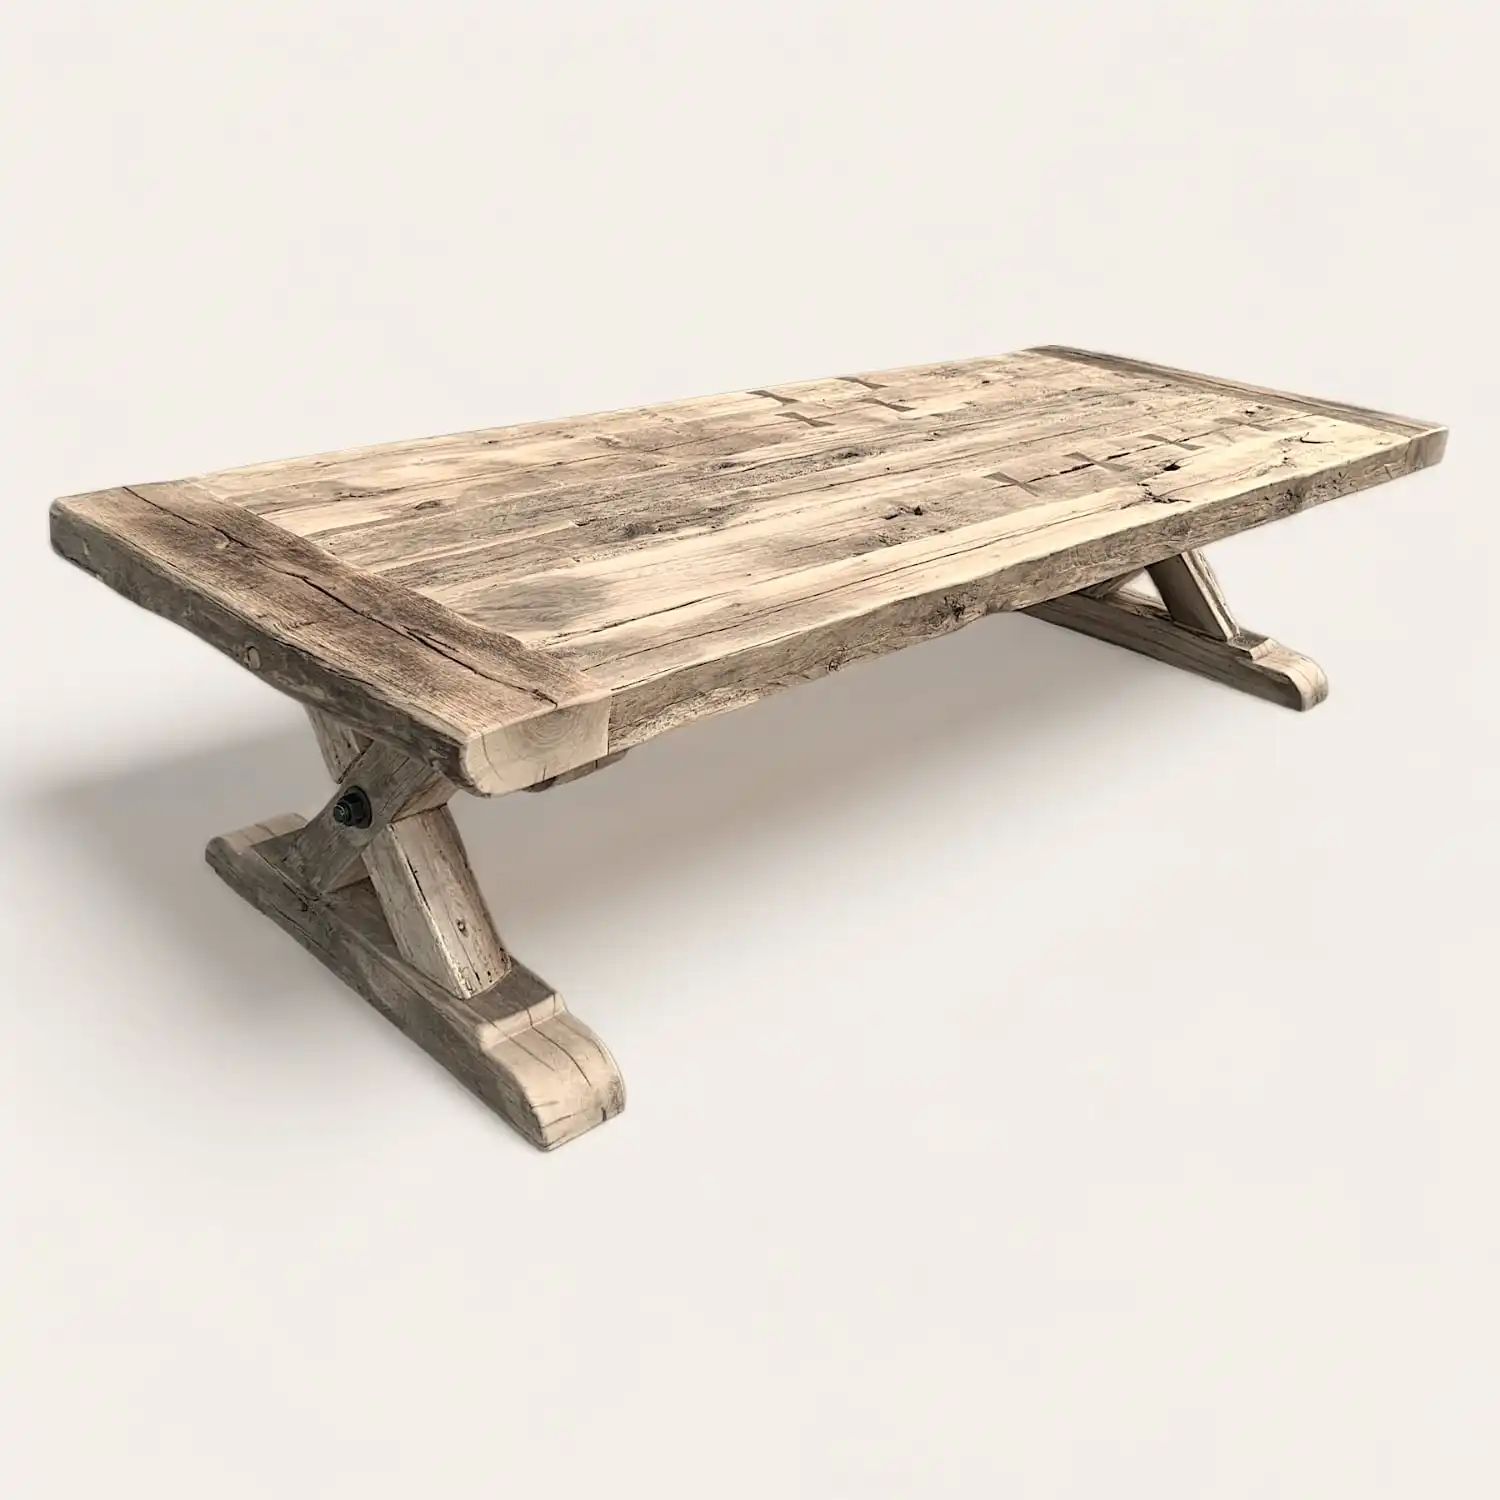  Une table de ferme rustique en bois avec pieds. 